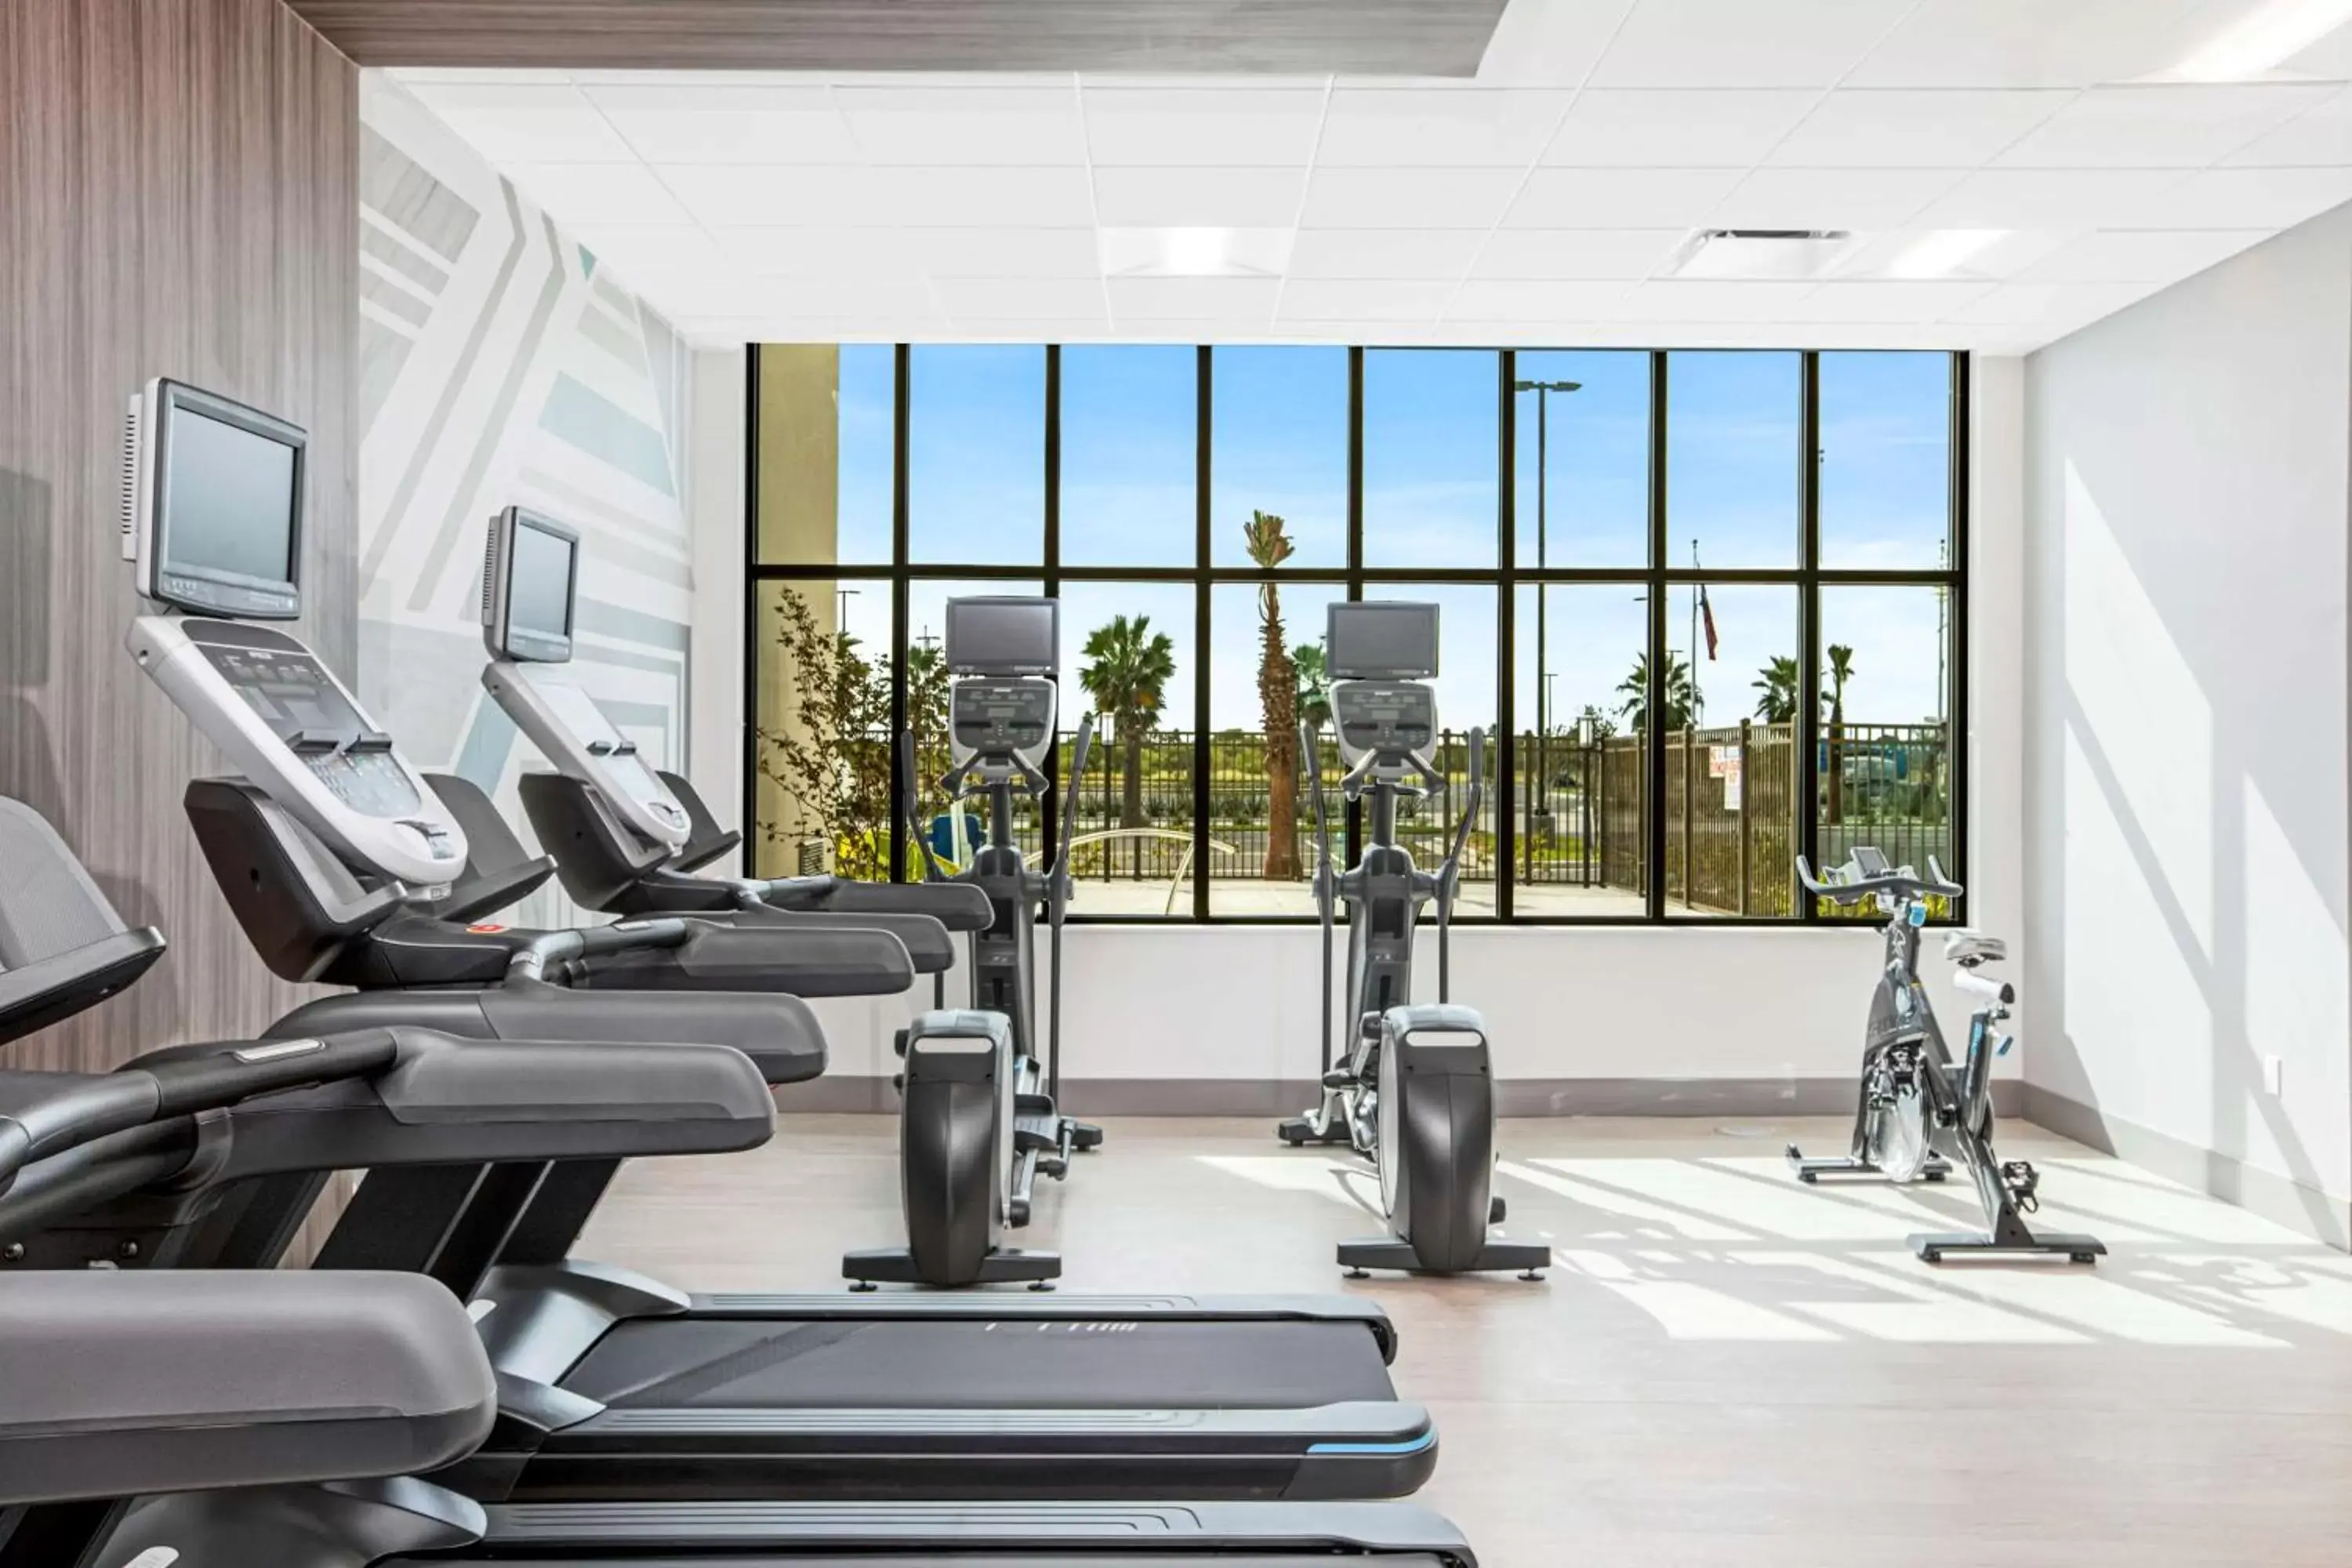 Fitness centre/facilities, Fitness Center/Facilities in Hilton Garden Inn Harlingen Convention Center, Tx